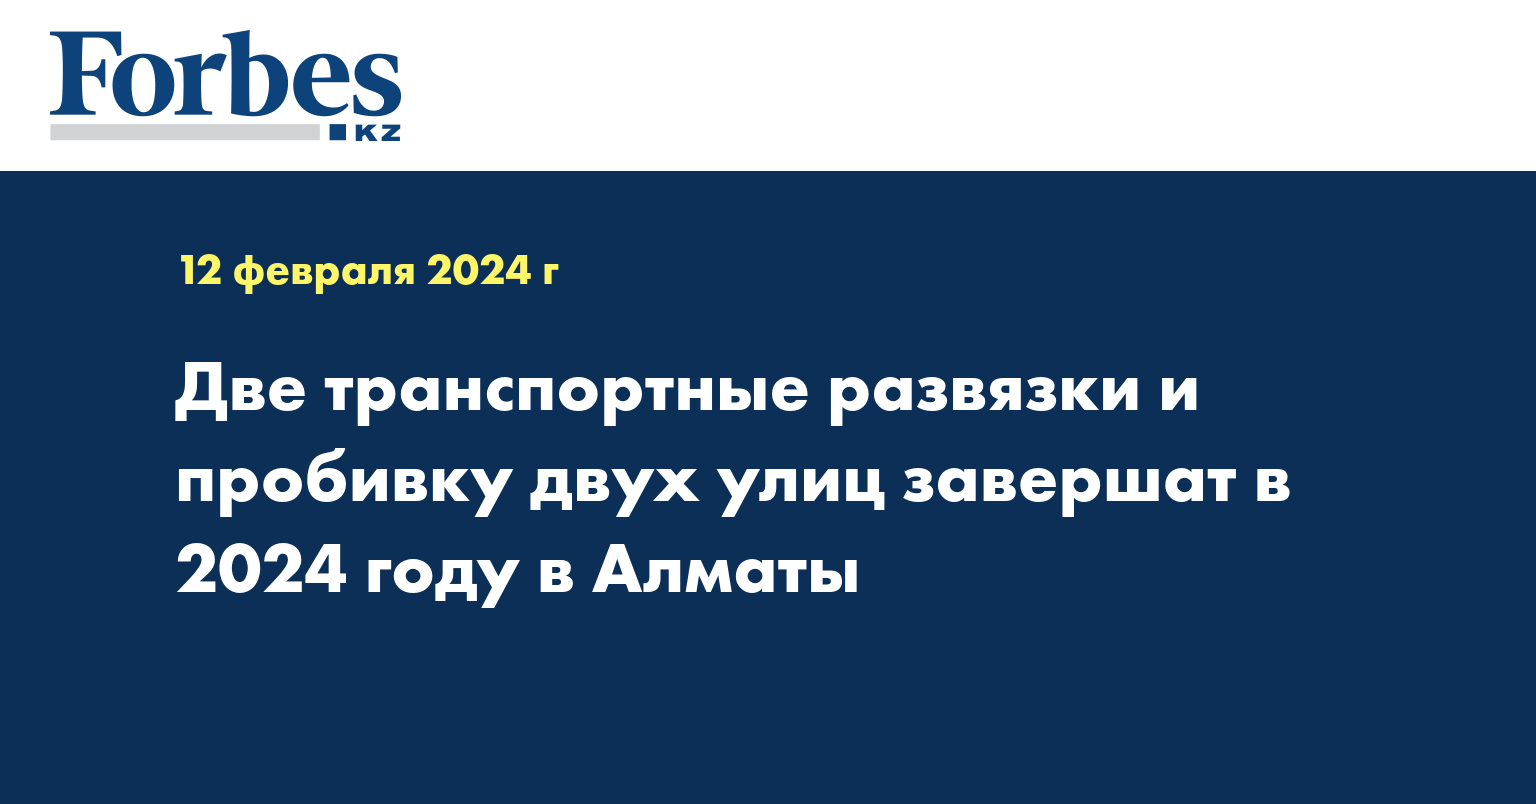 Две транспортные развязки и пробивку двух улиц завершат в 2024 году в Алматы